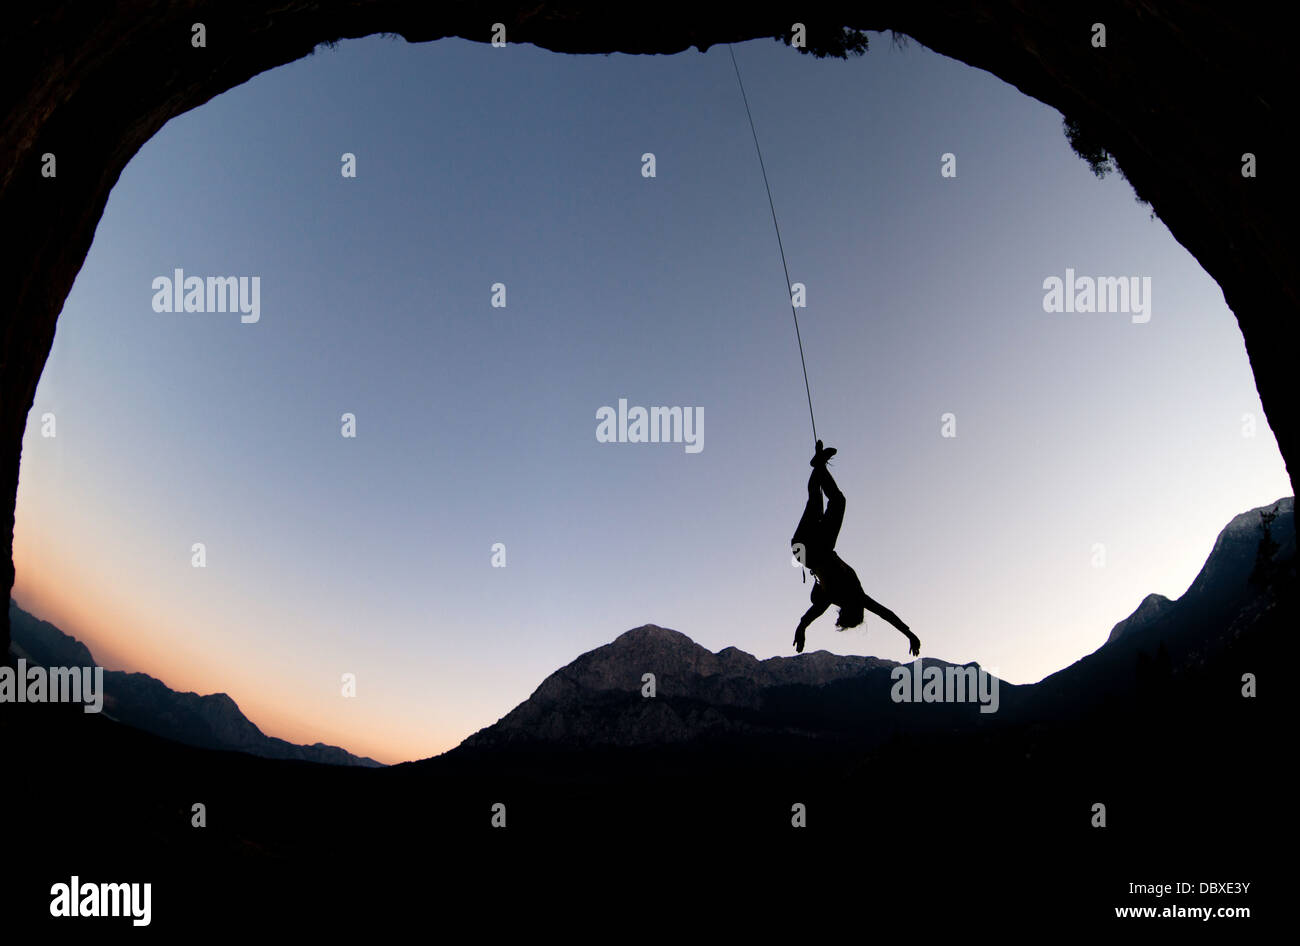 Weibliche silhouette touch Berg Horizont am Ende klettern Tag. Sonnenuntergang in der Türkei in den Bergen, Schießen von geyikbayiri Höhle. Stockfoto